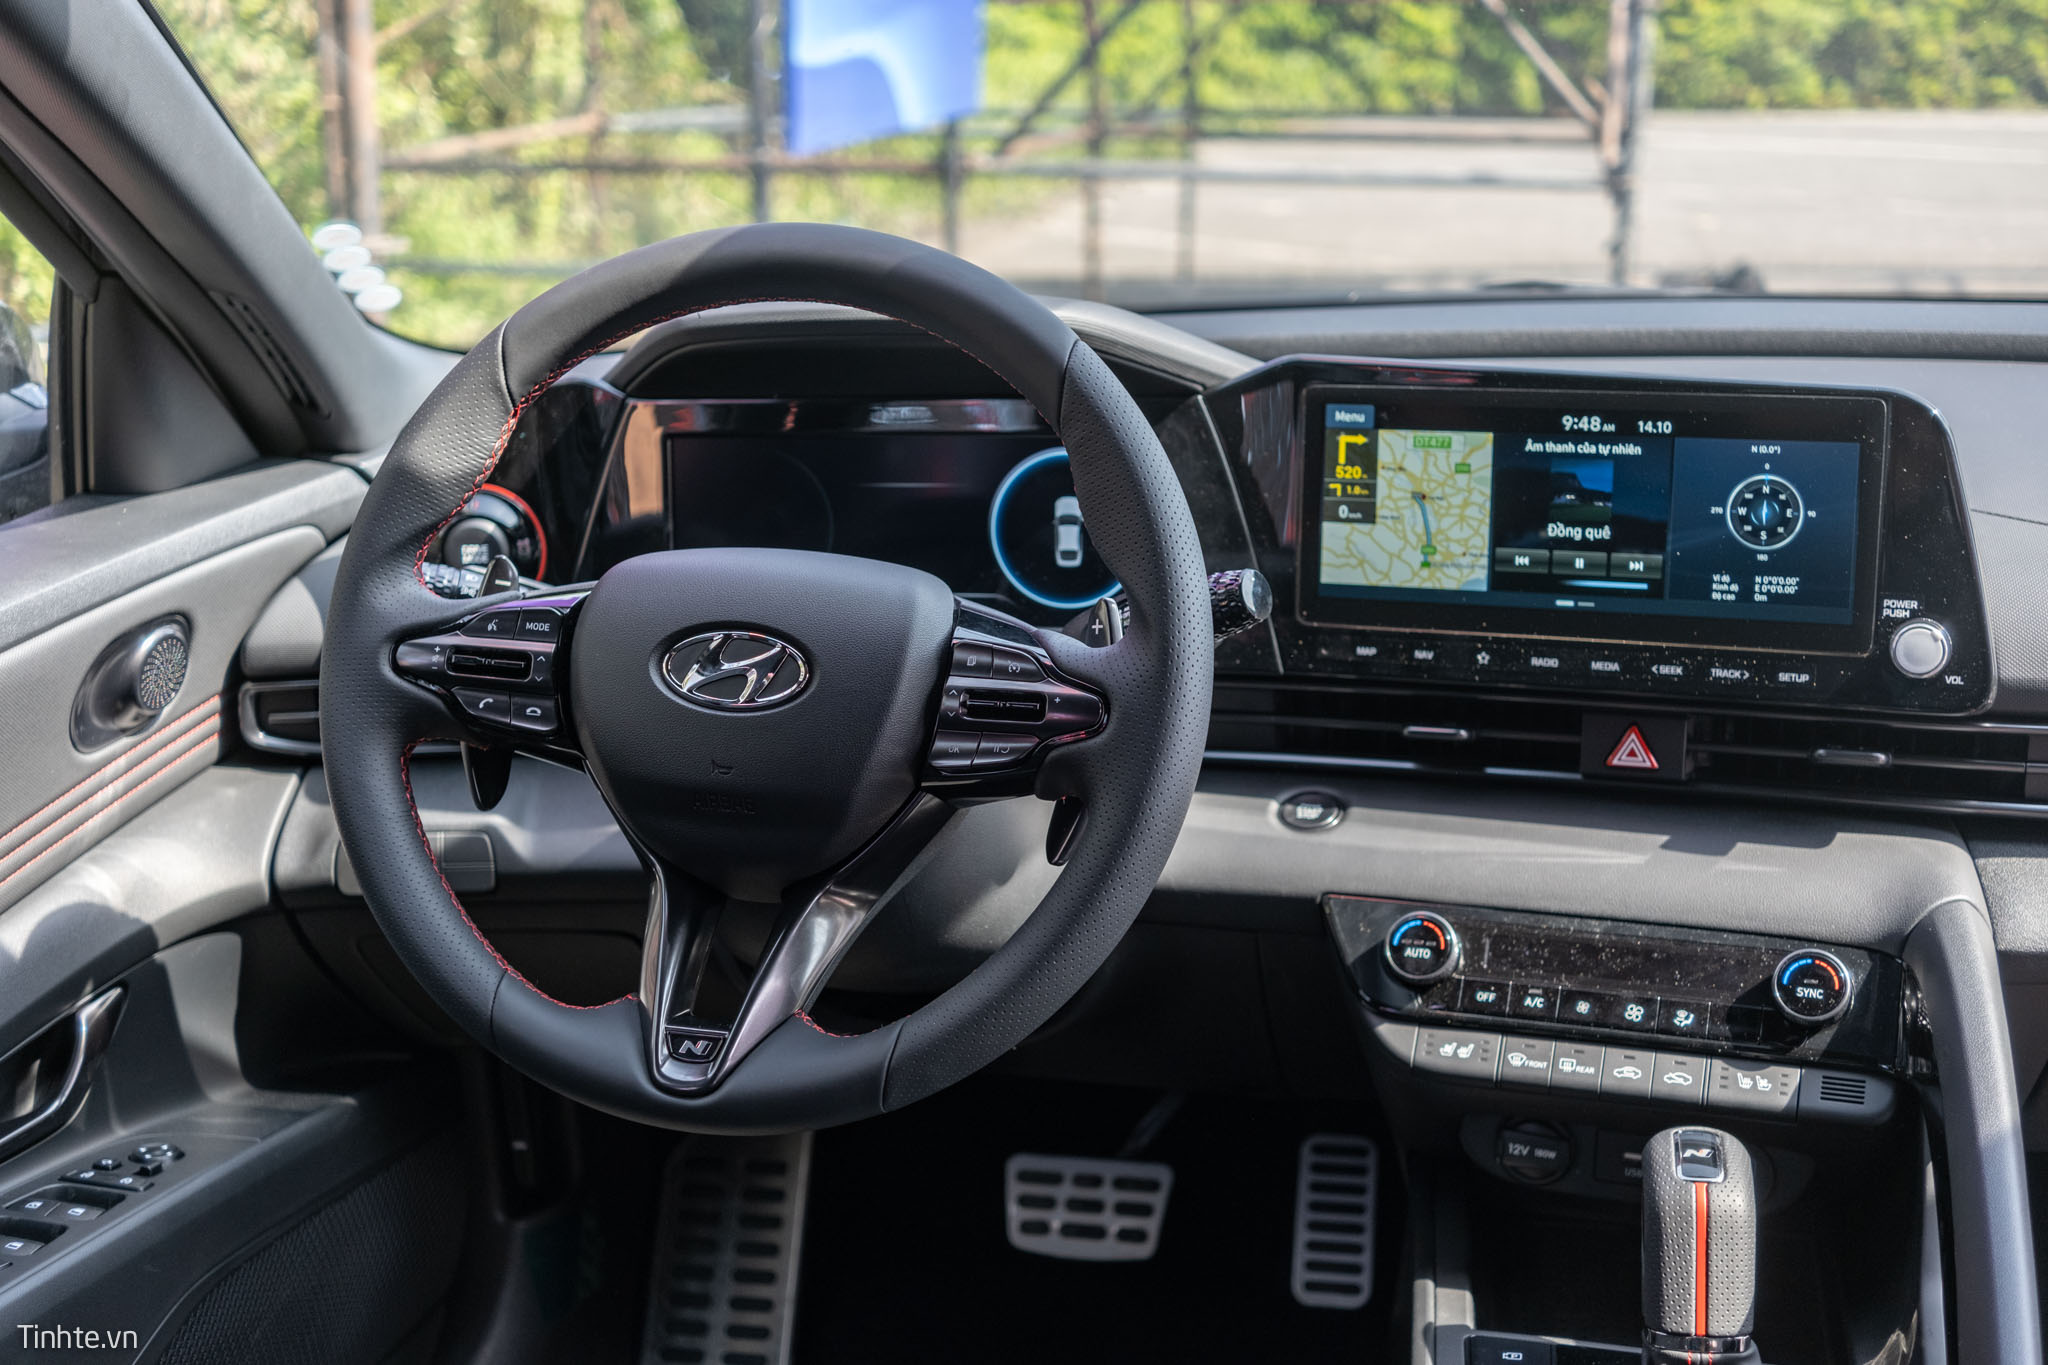 Hyundai phát triển “Hyundai Pay” để thanh toán phí đậu xe dễ dàng hơn